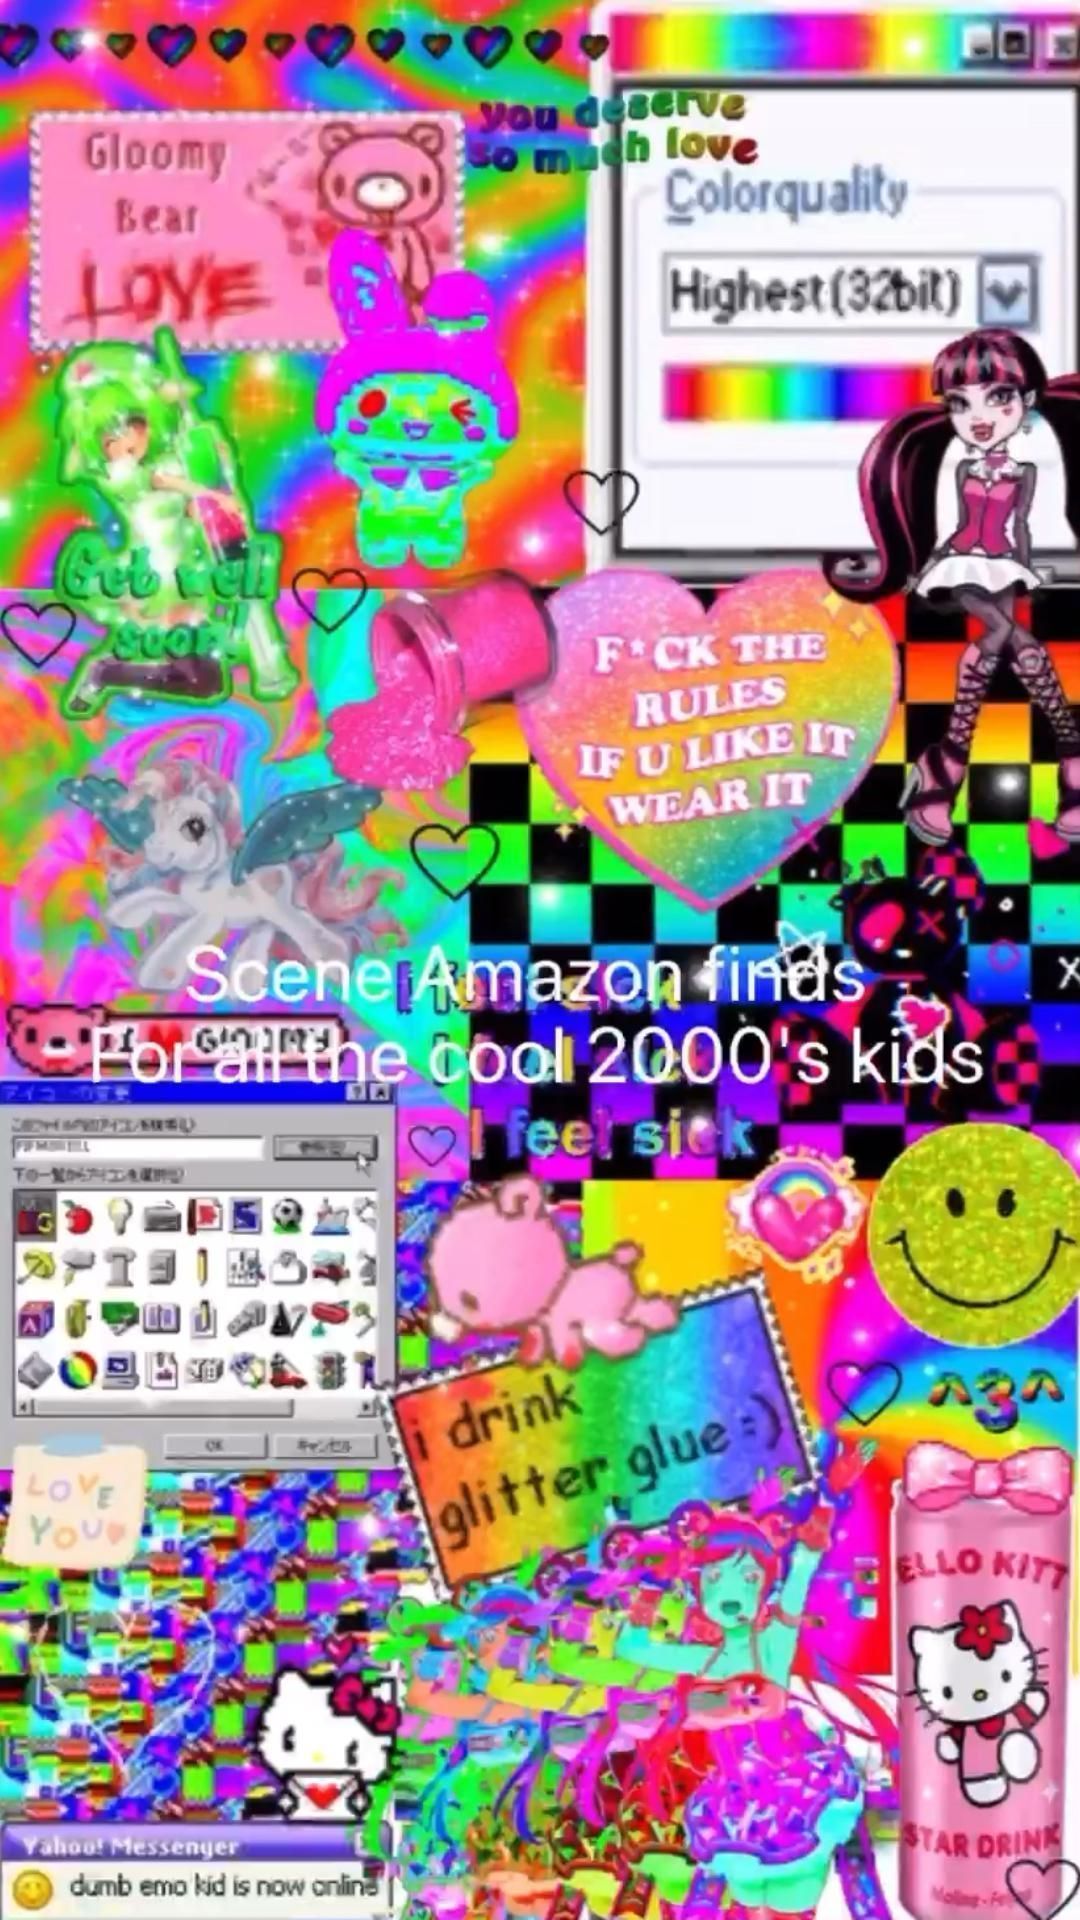 Scene Amazon finds for the cool 2000's kids - Scenecore